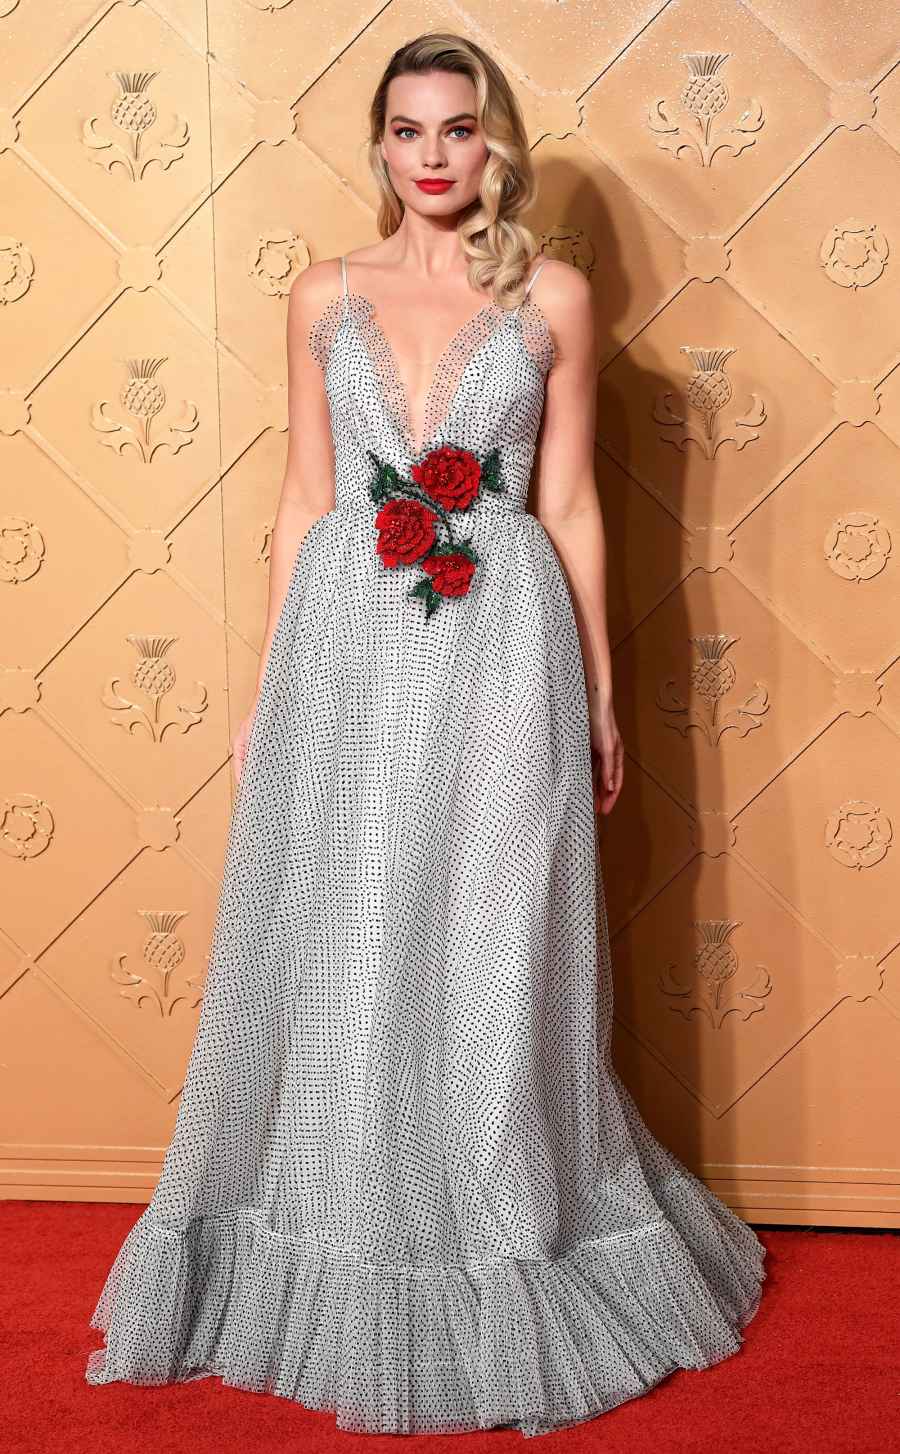 Margot Robbie's Best Red Carpet Looks